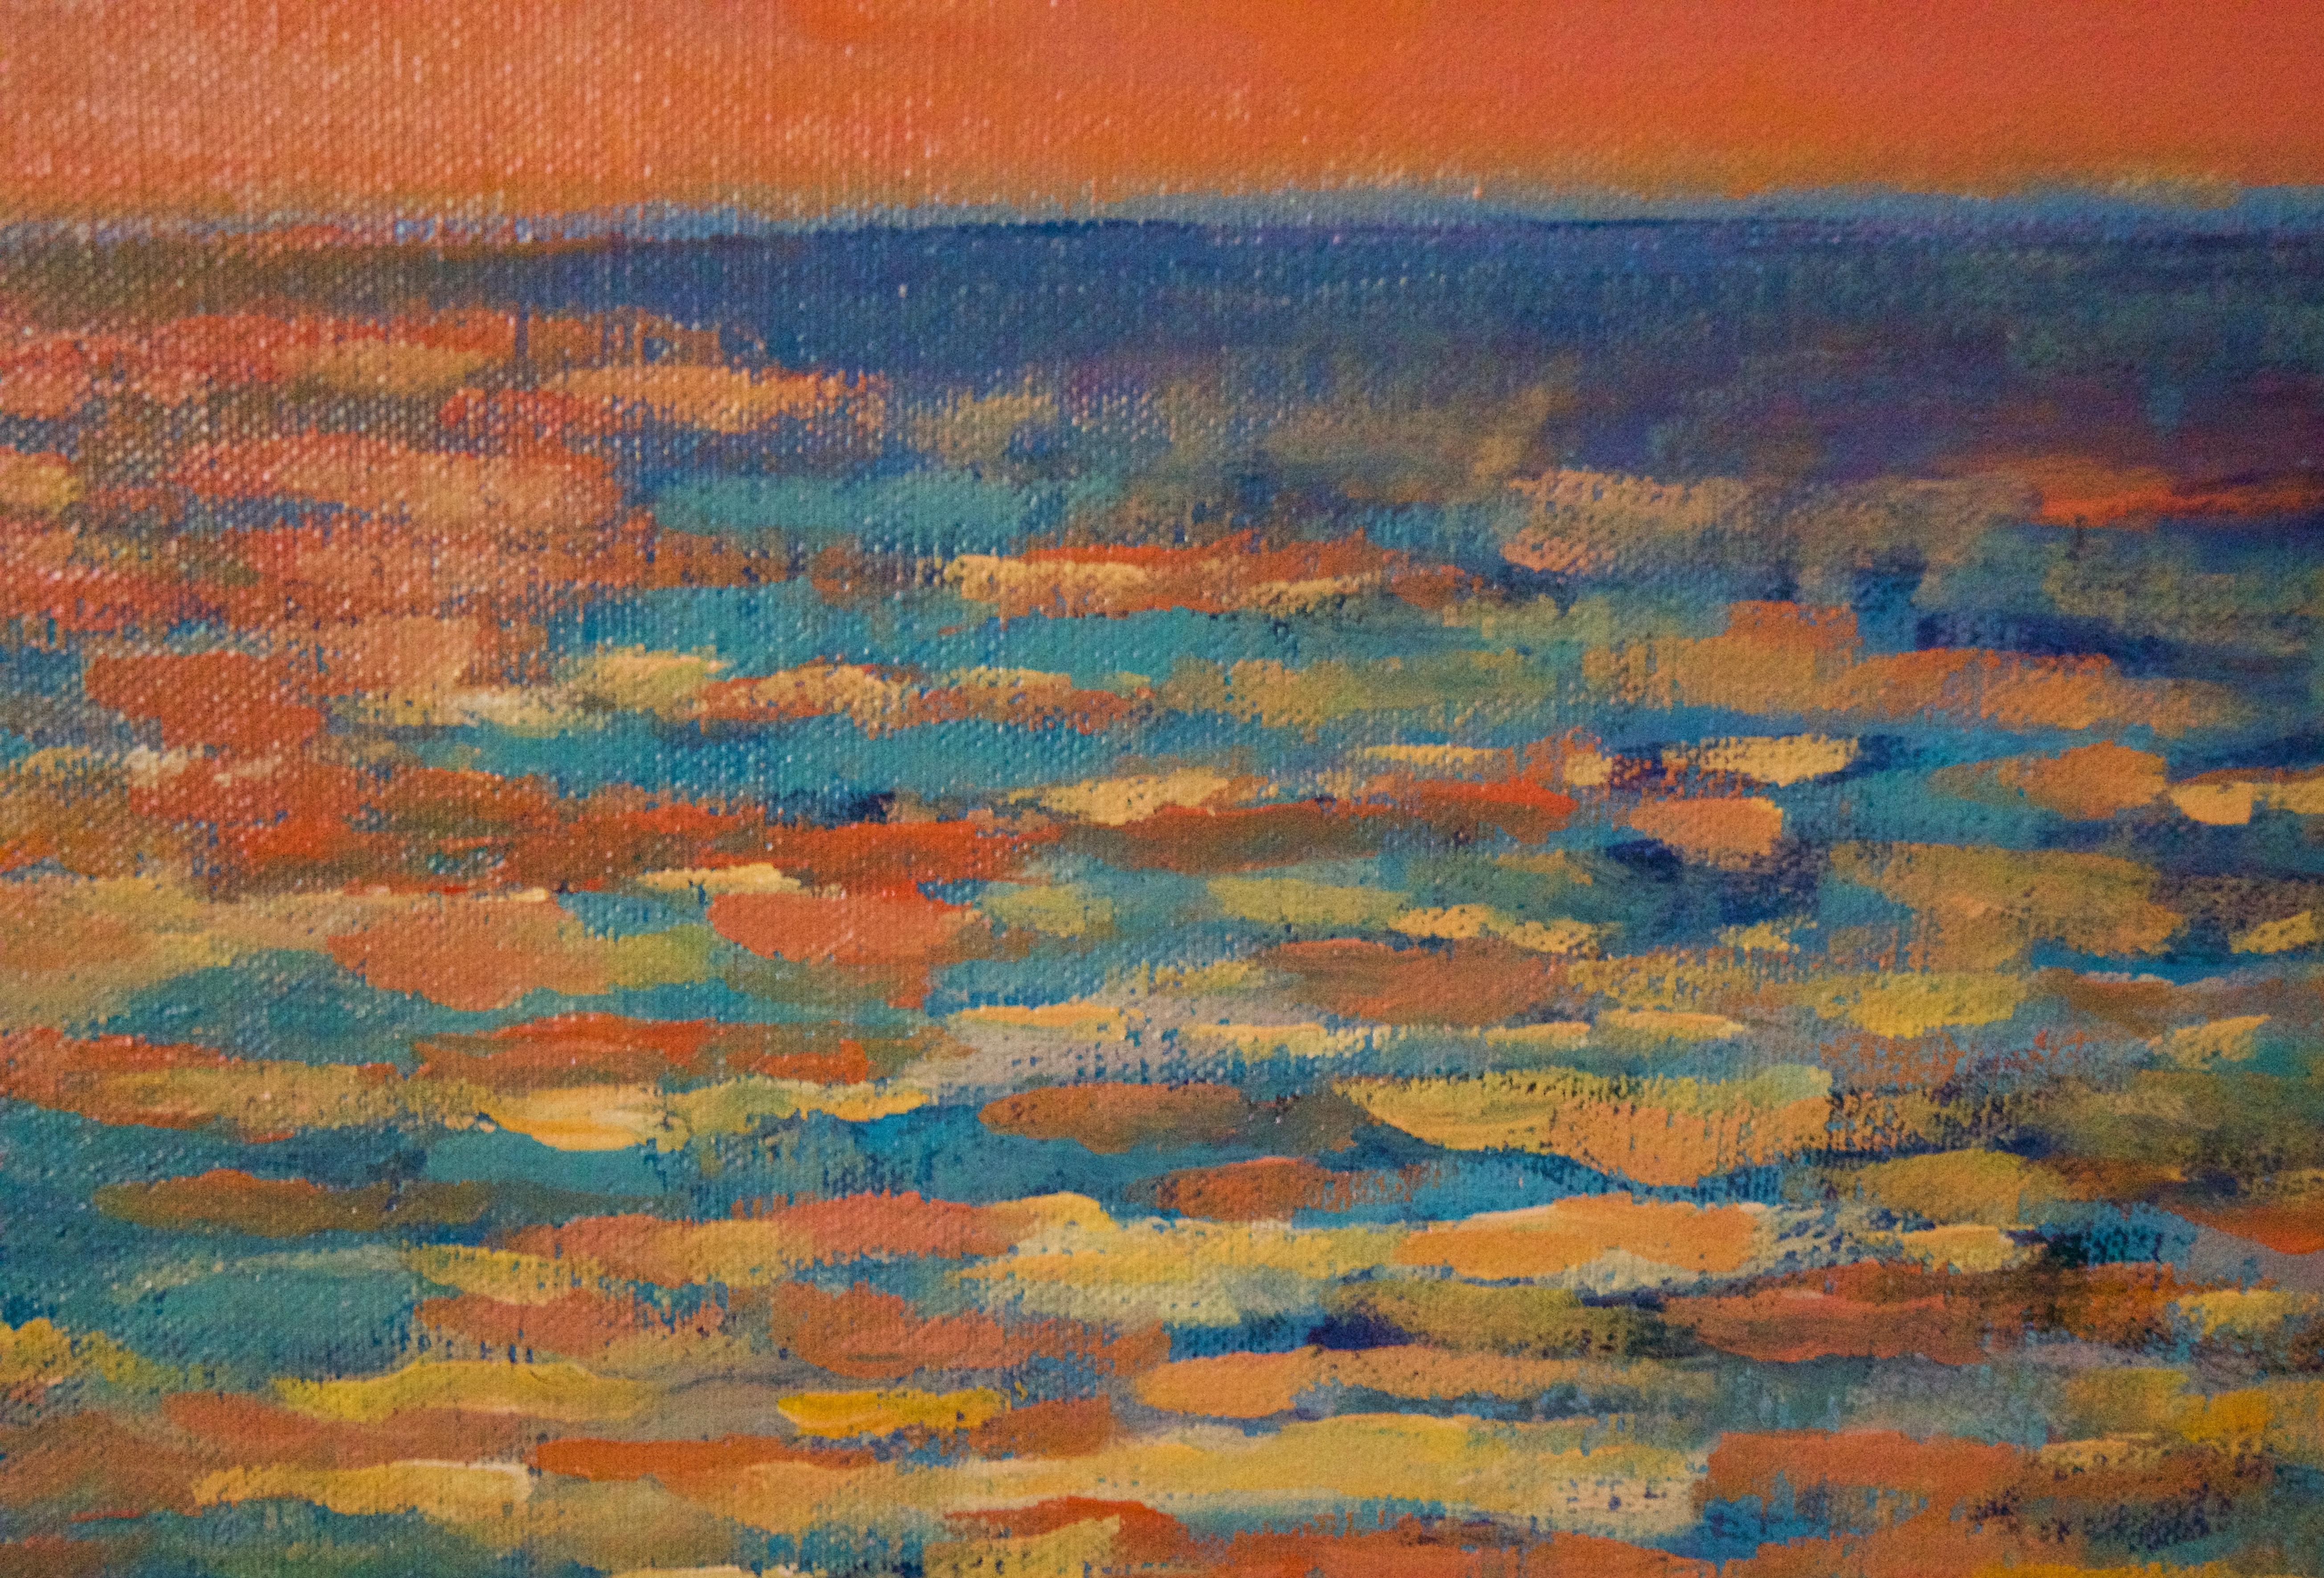 Sonnenuntergang vom Porthmeor Beach - St. Ives - Acryl von Quirke, spätes 20. Jahrhundert (Post-Impressionismus), Painting, von Michael Quirke